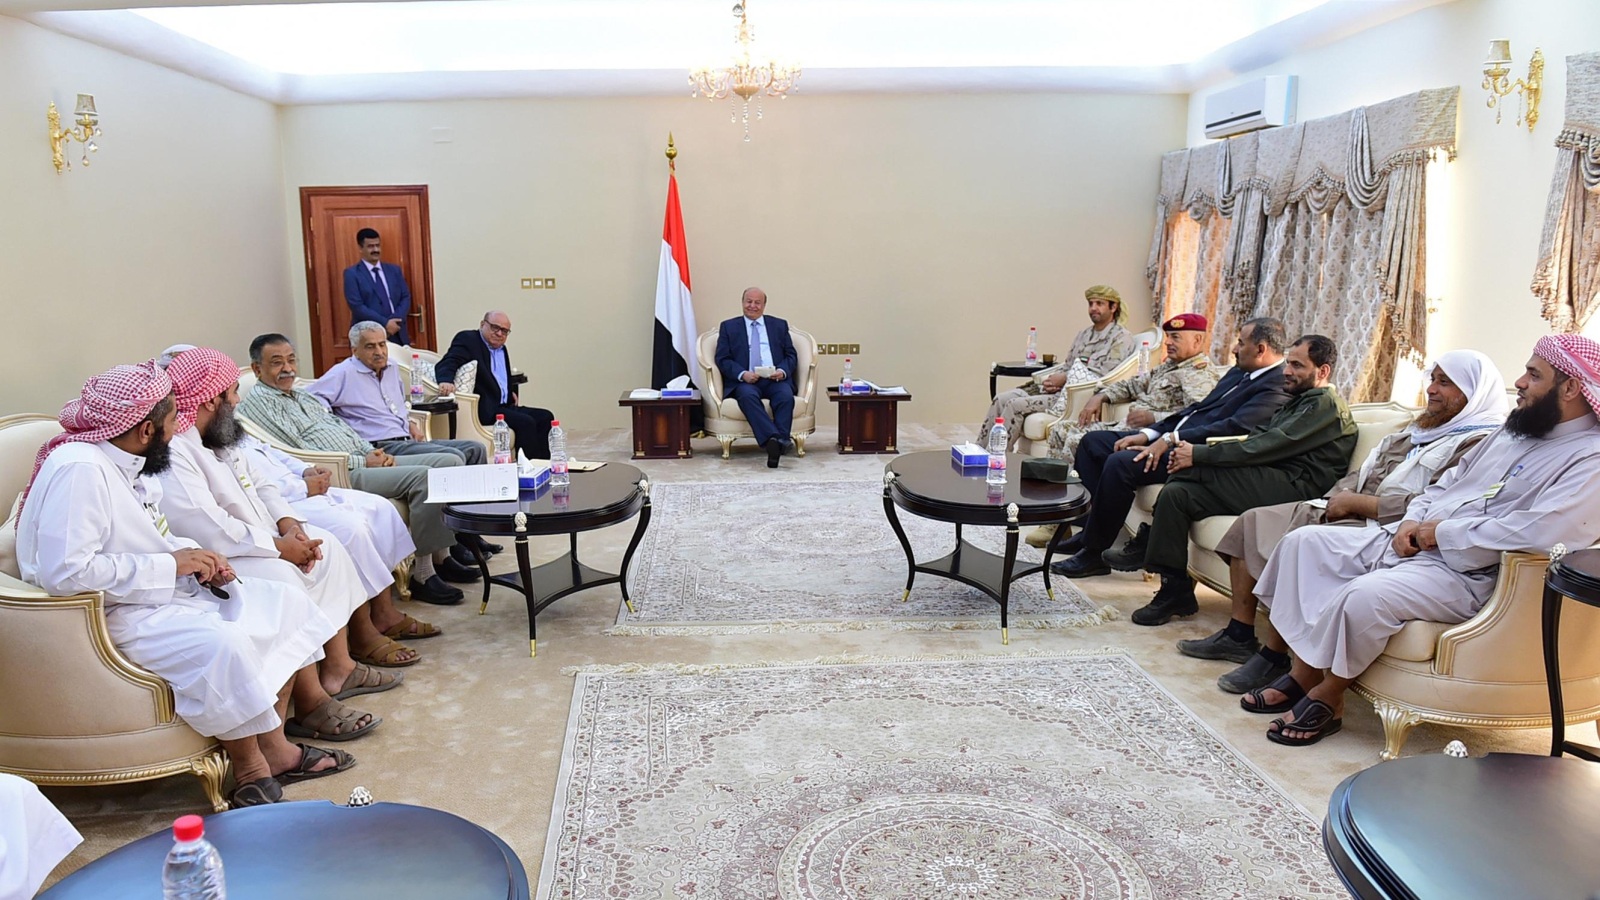 الرئيس هادي يجتمع مع مستشارين وأنصار في مقر الرئاسة بعدن(أسوشيتد برس)